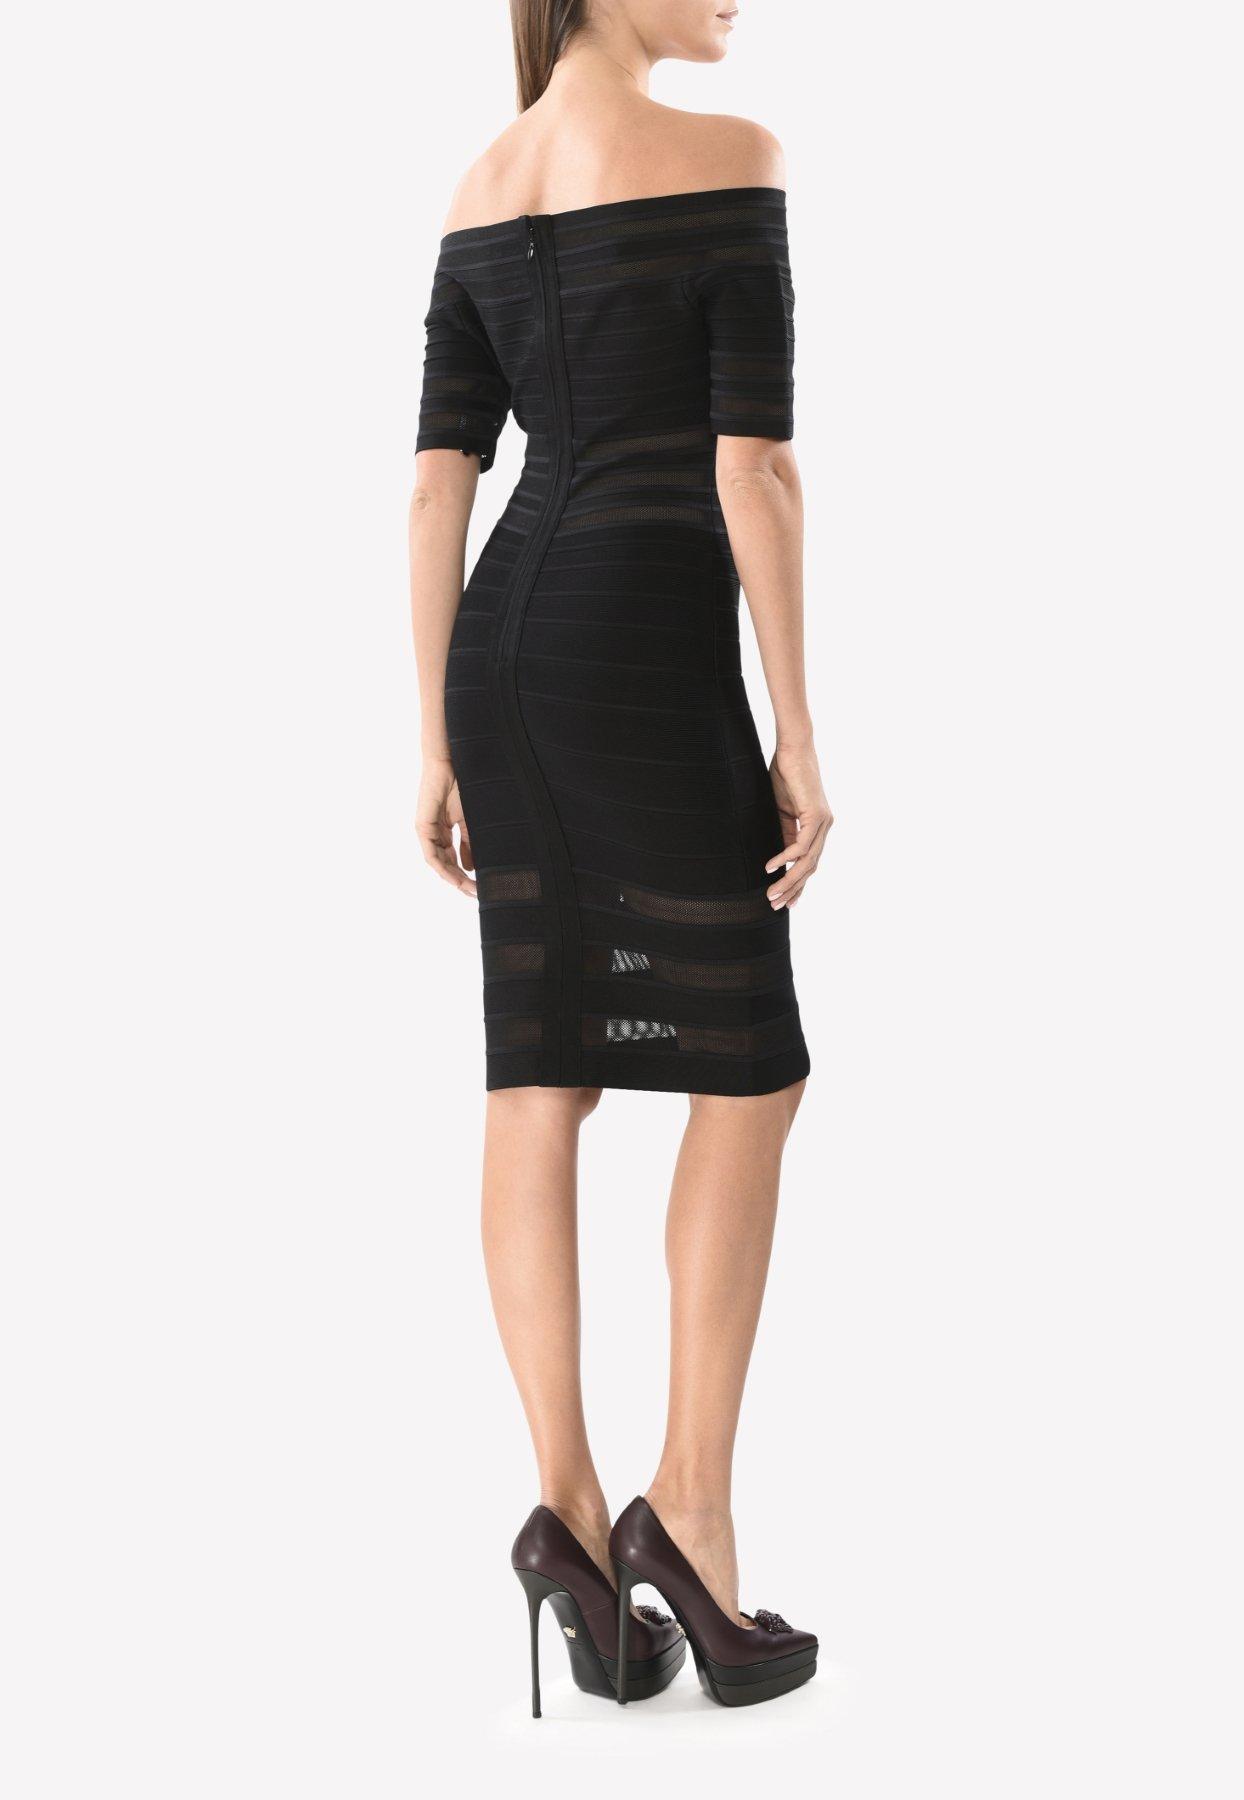 Hervé Léger Synthetic Leia Mesh Off-shoulder Bandage Dress in Black - Lyst